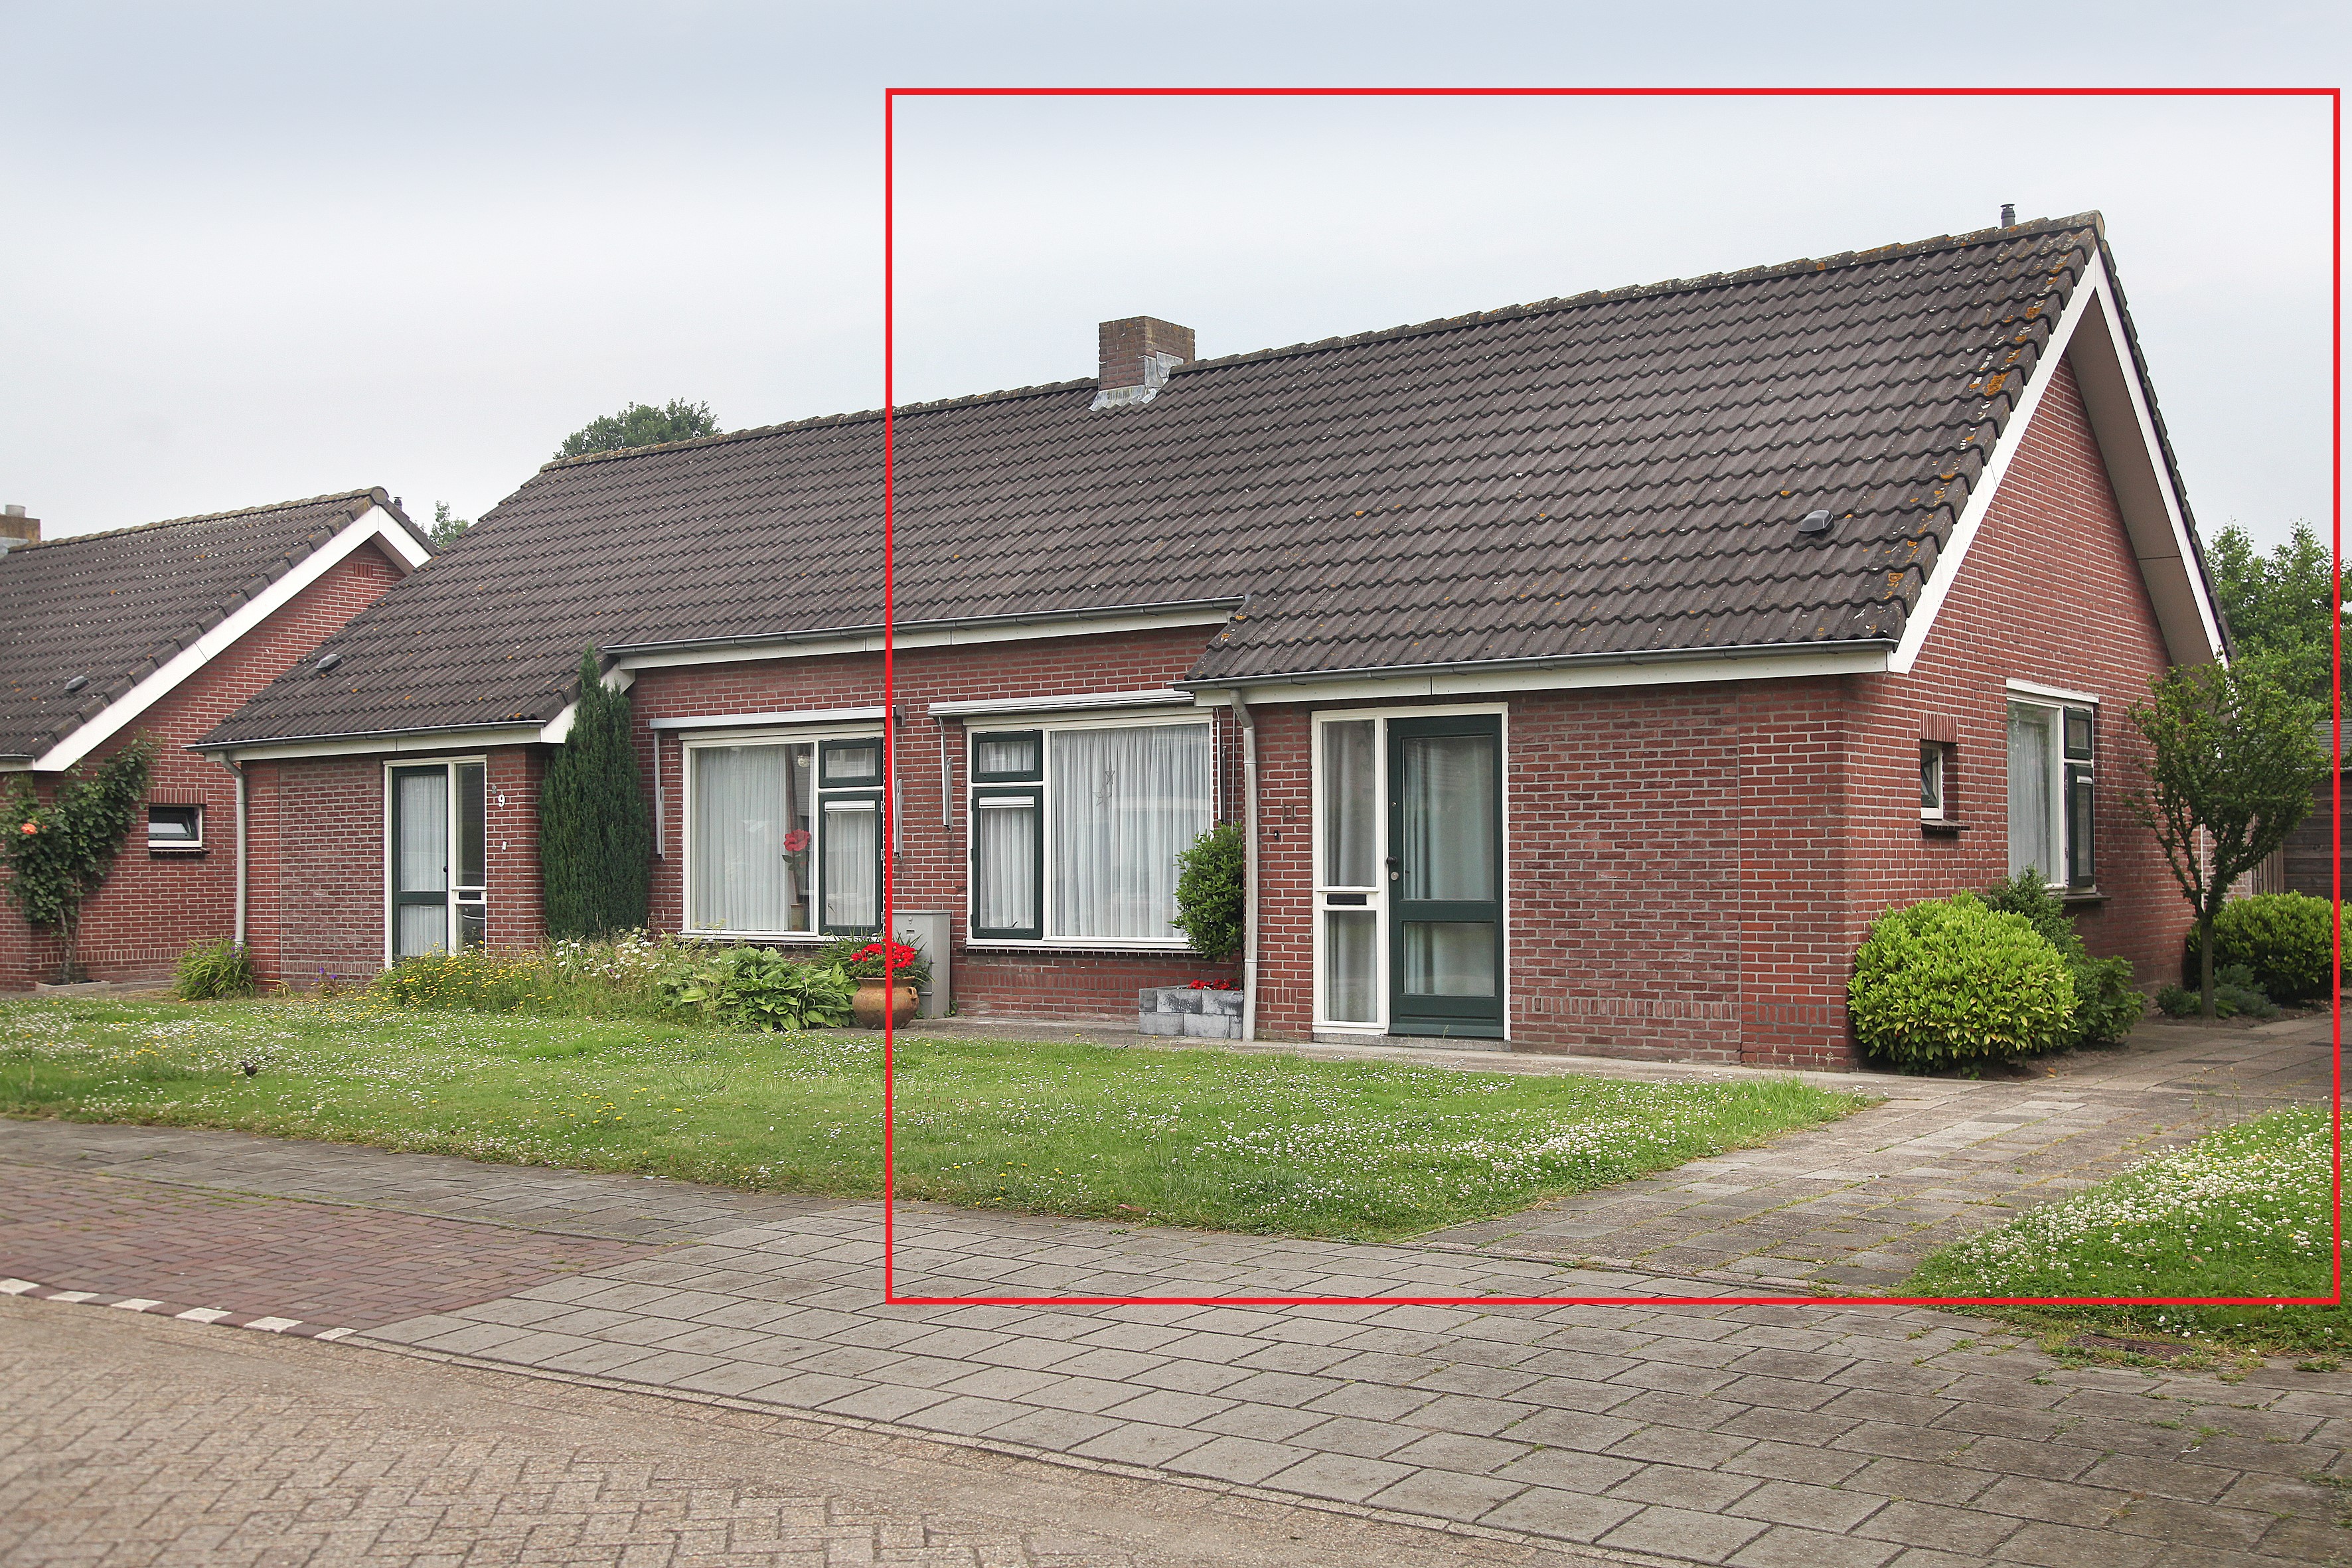 Boomgaardstraat 11, 5071 VJ Udenhout, Nederland